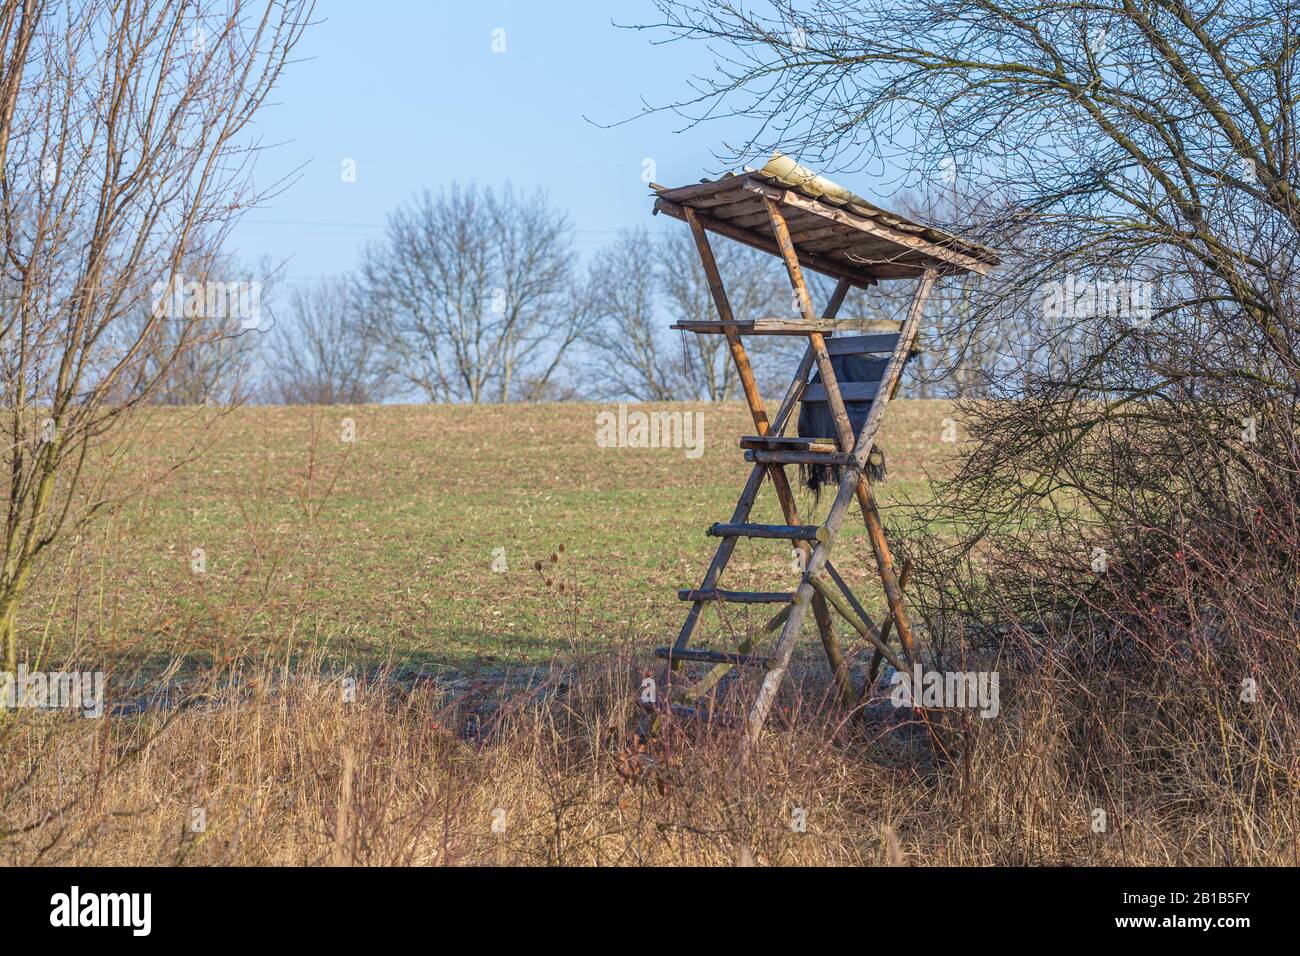 Punto de observación de vida silvestre - Ceguera elevada o torre de caza cerca de la pradera Foto de stock